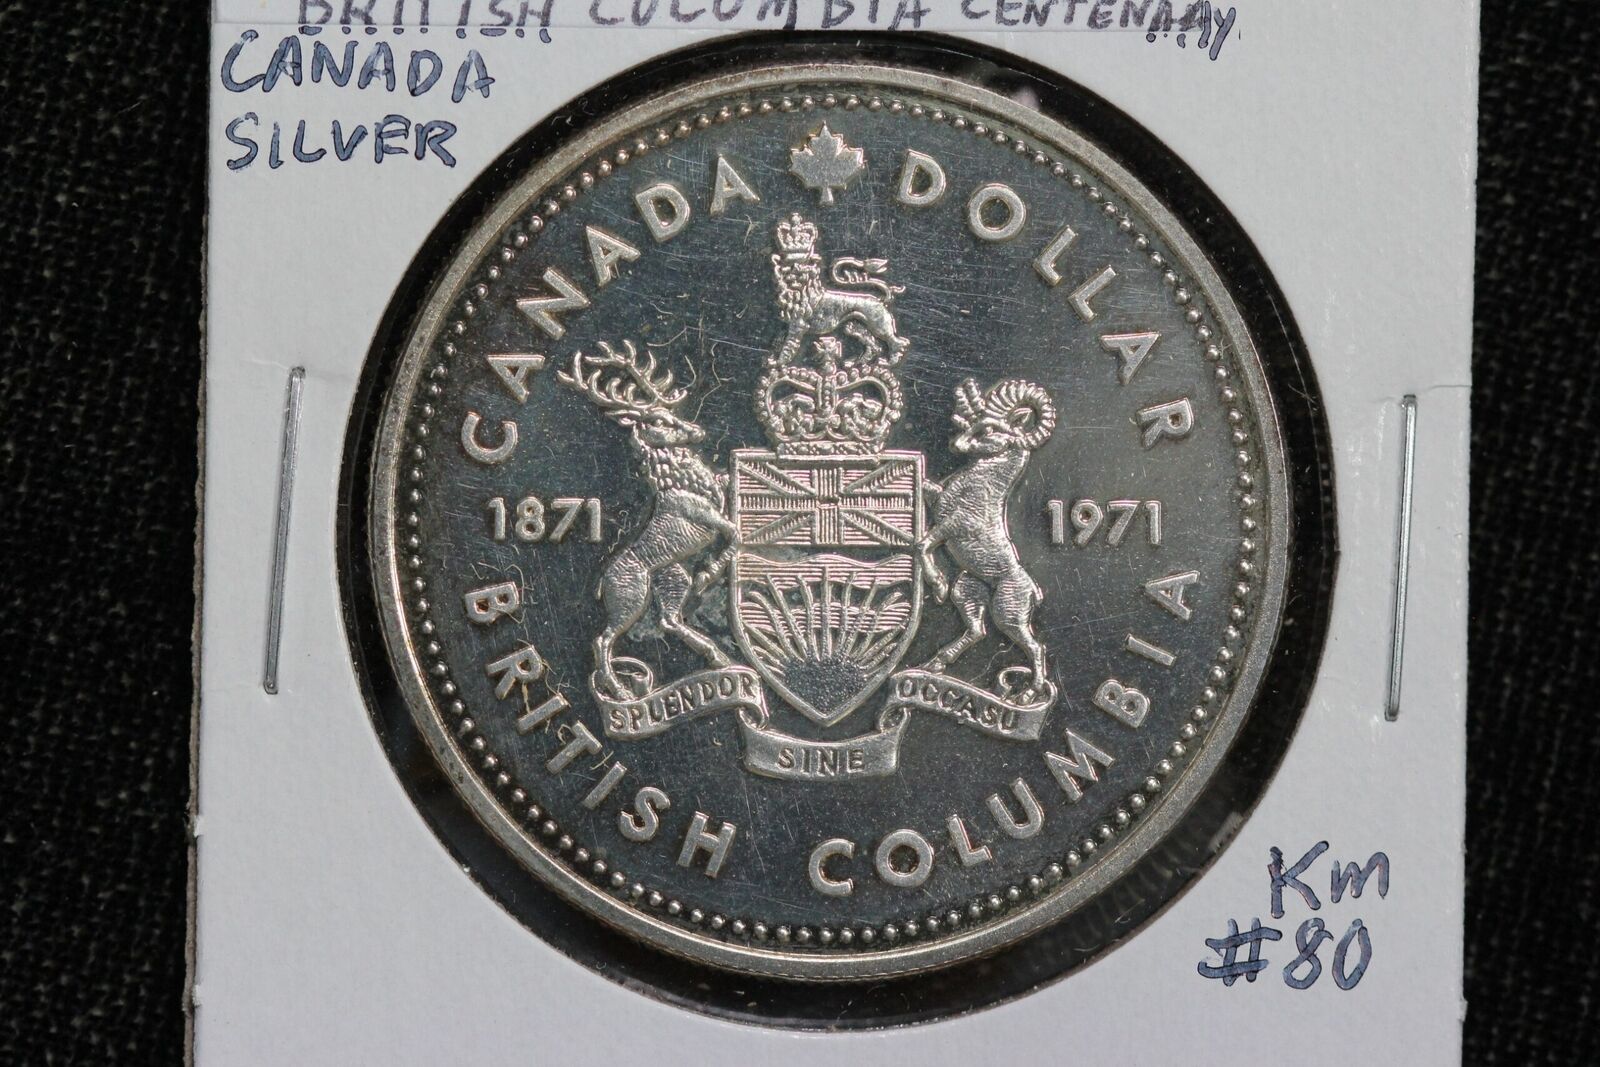 1871 1971 British Columbia Centennial Commemorative Canada Silver Dollar 4VZA